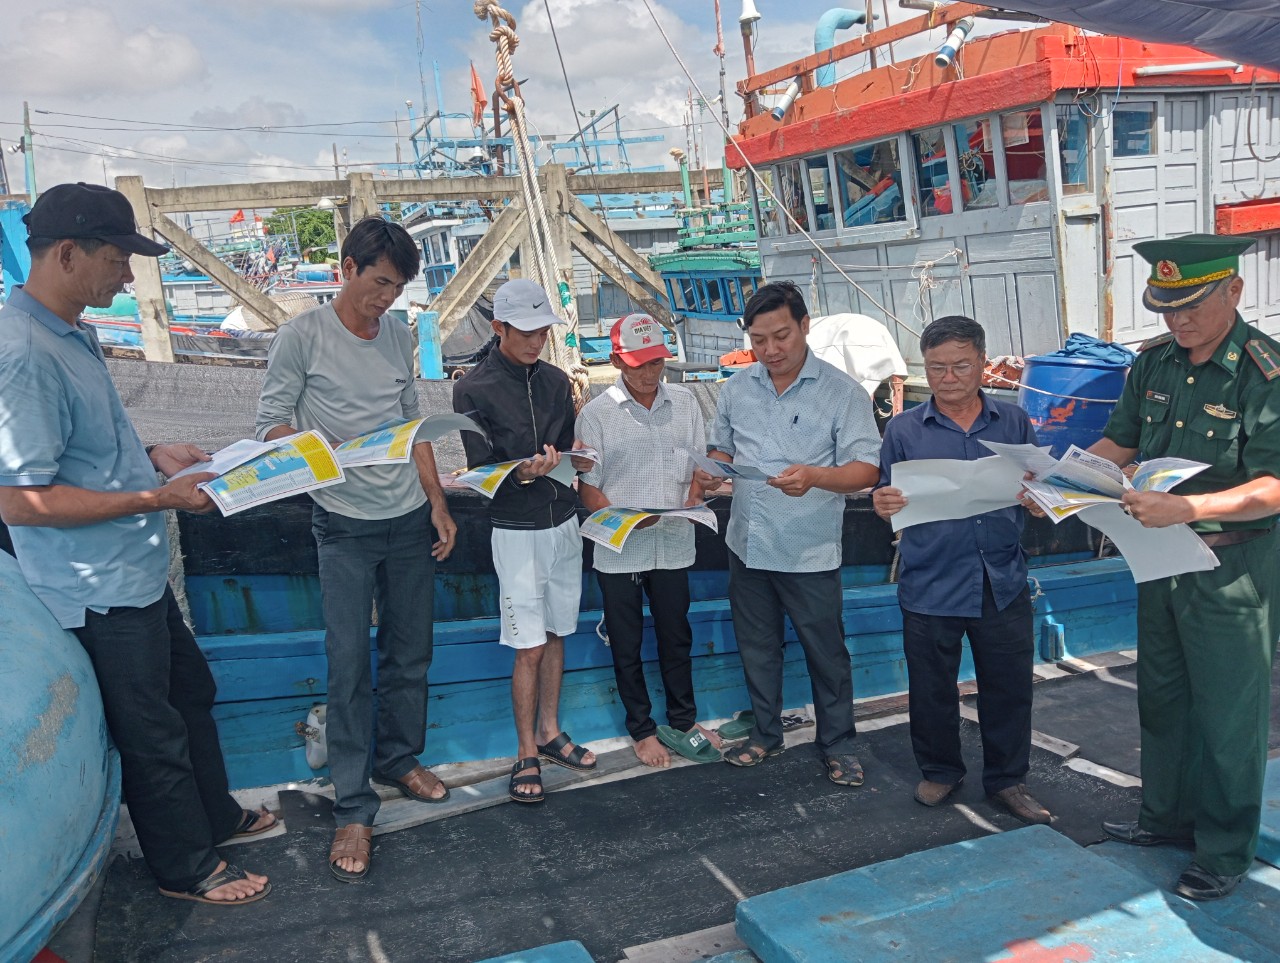 Tuyên truyền chống khai thác hải sản bất hợp pháp cho chủ tàu và ngư dân tại xã Bình Châu